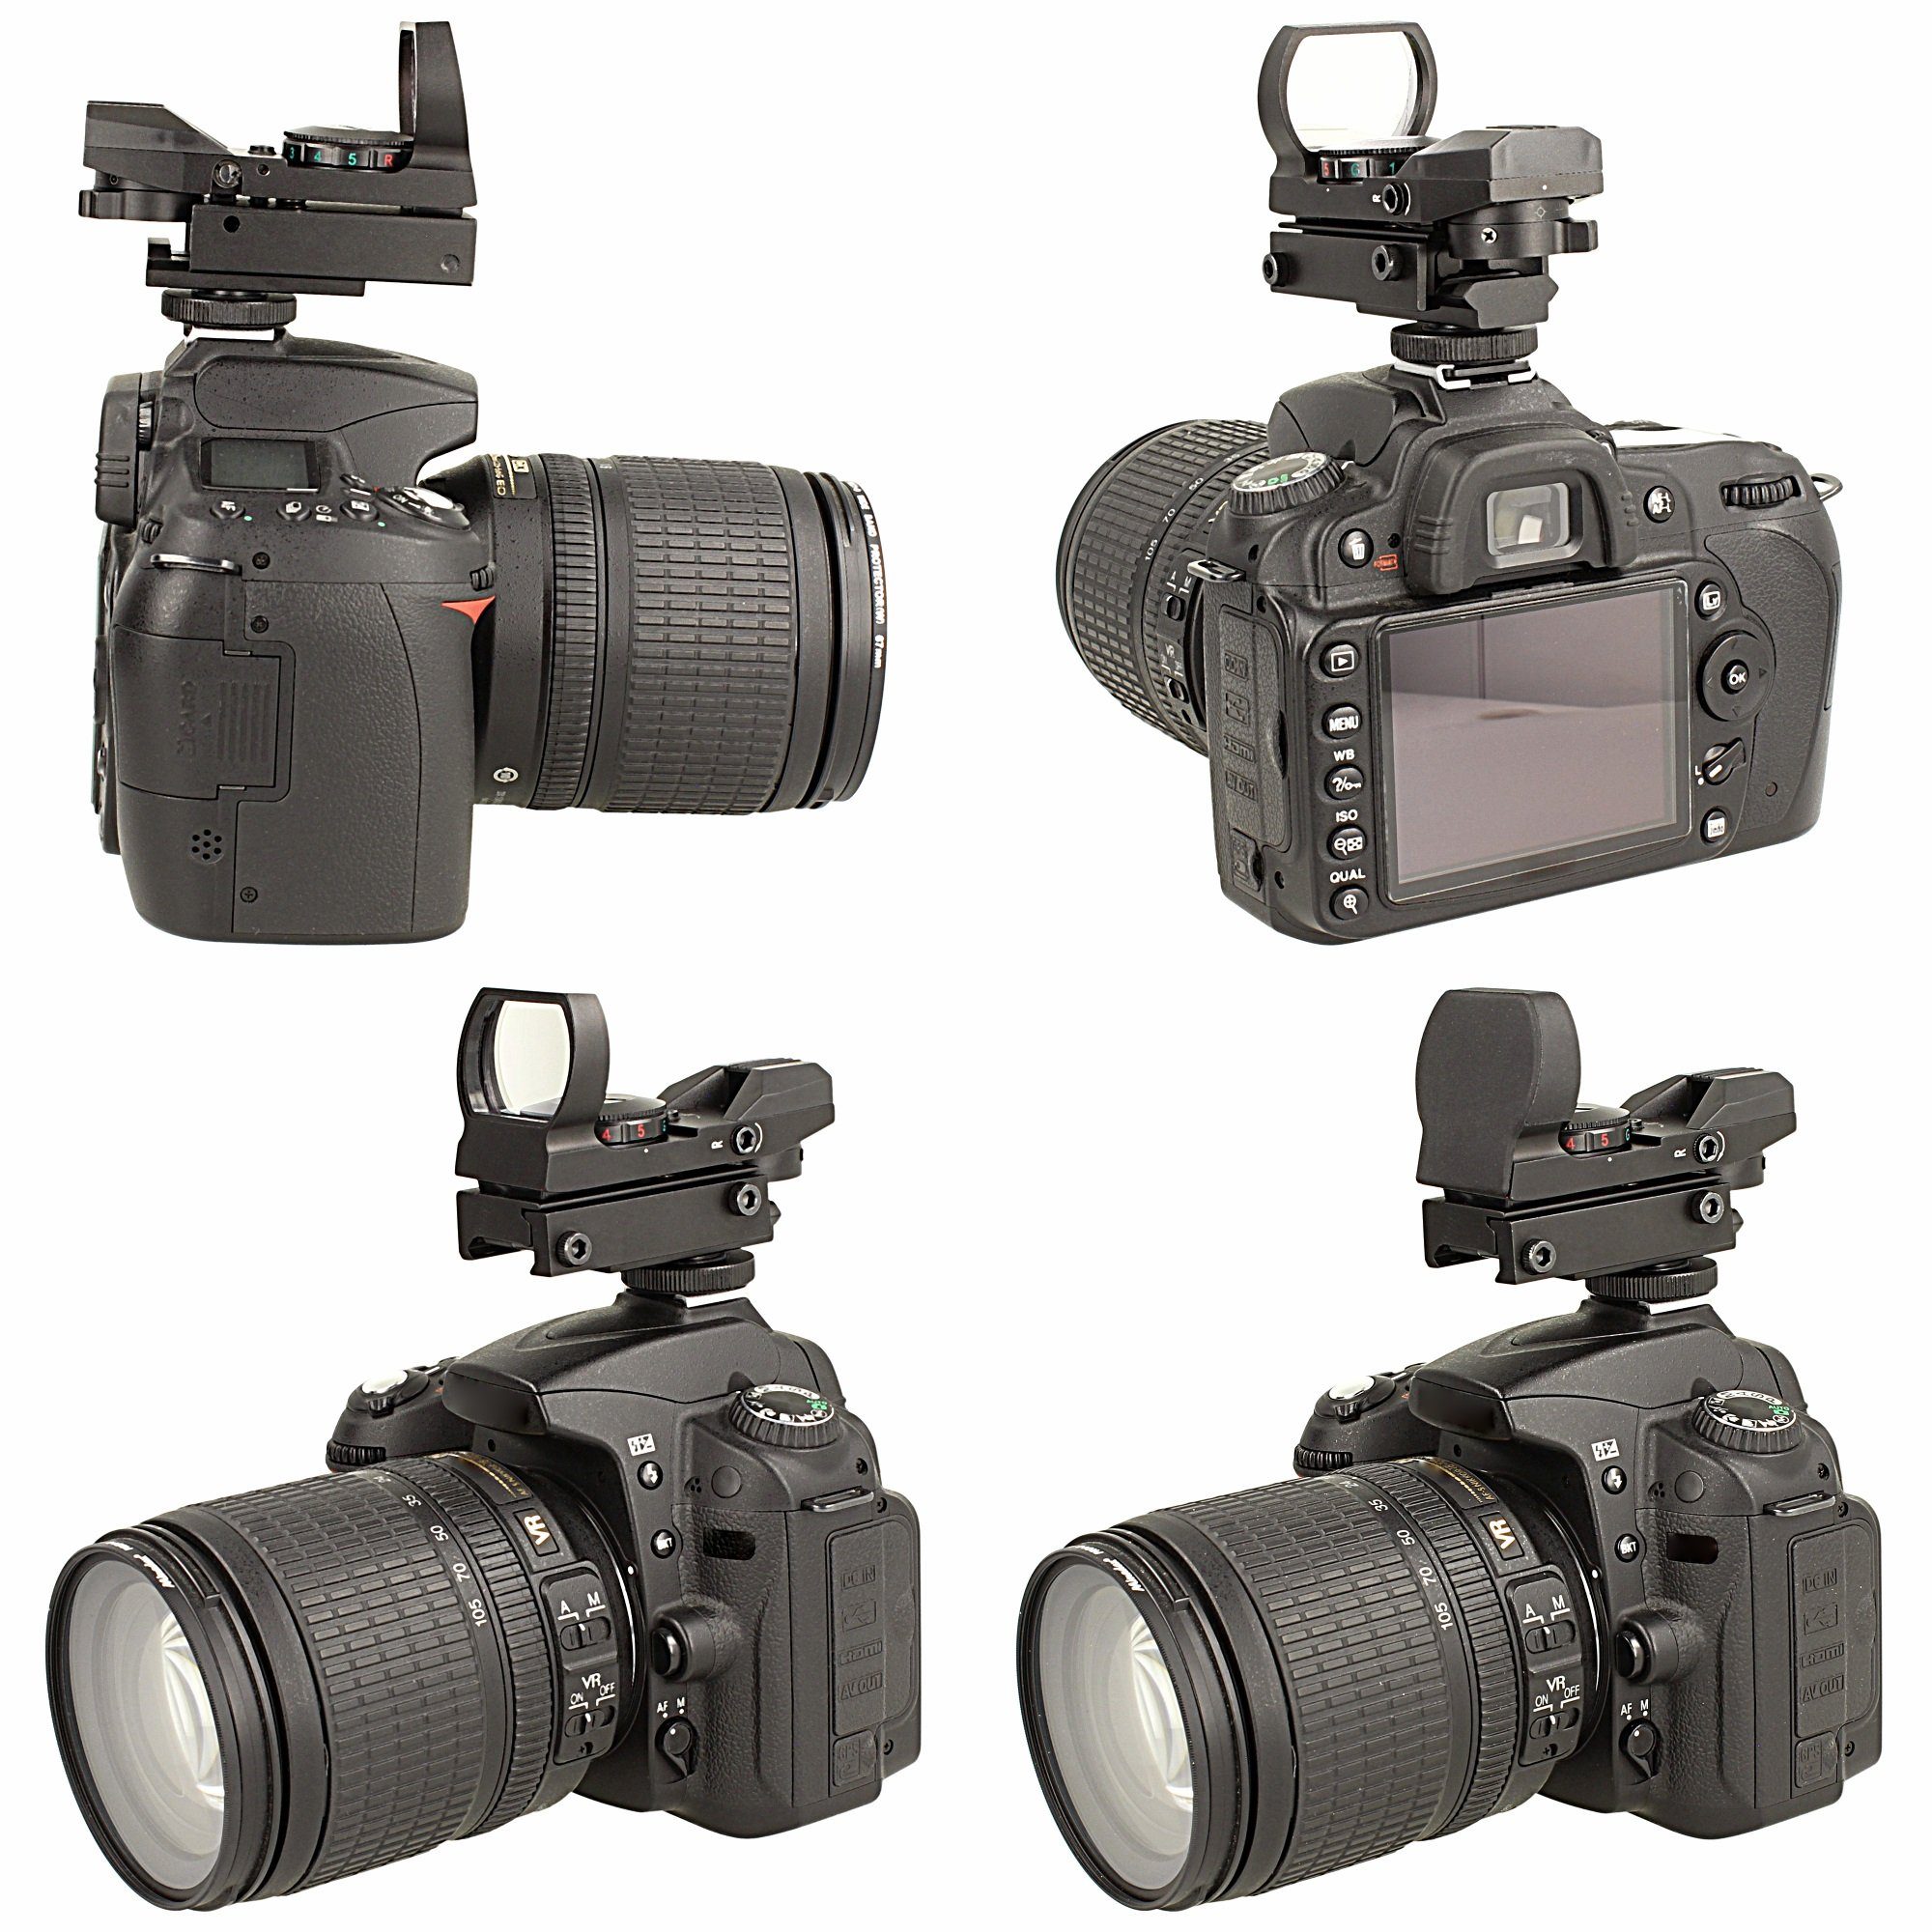 Minadax Aufstecksucher Red Dot 33mm Adapter, für Sichtfeld, Kameras Visier Punkt + Tierfoto